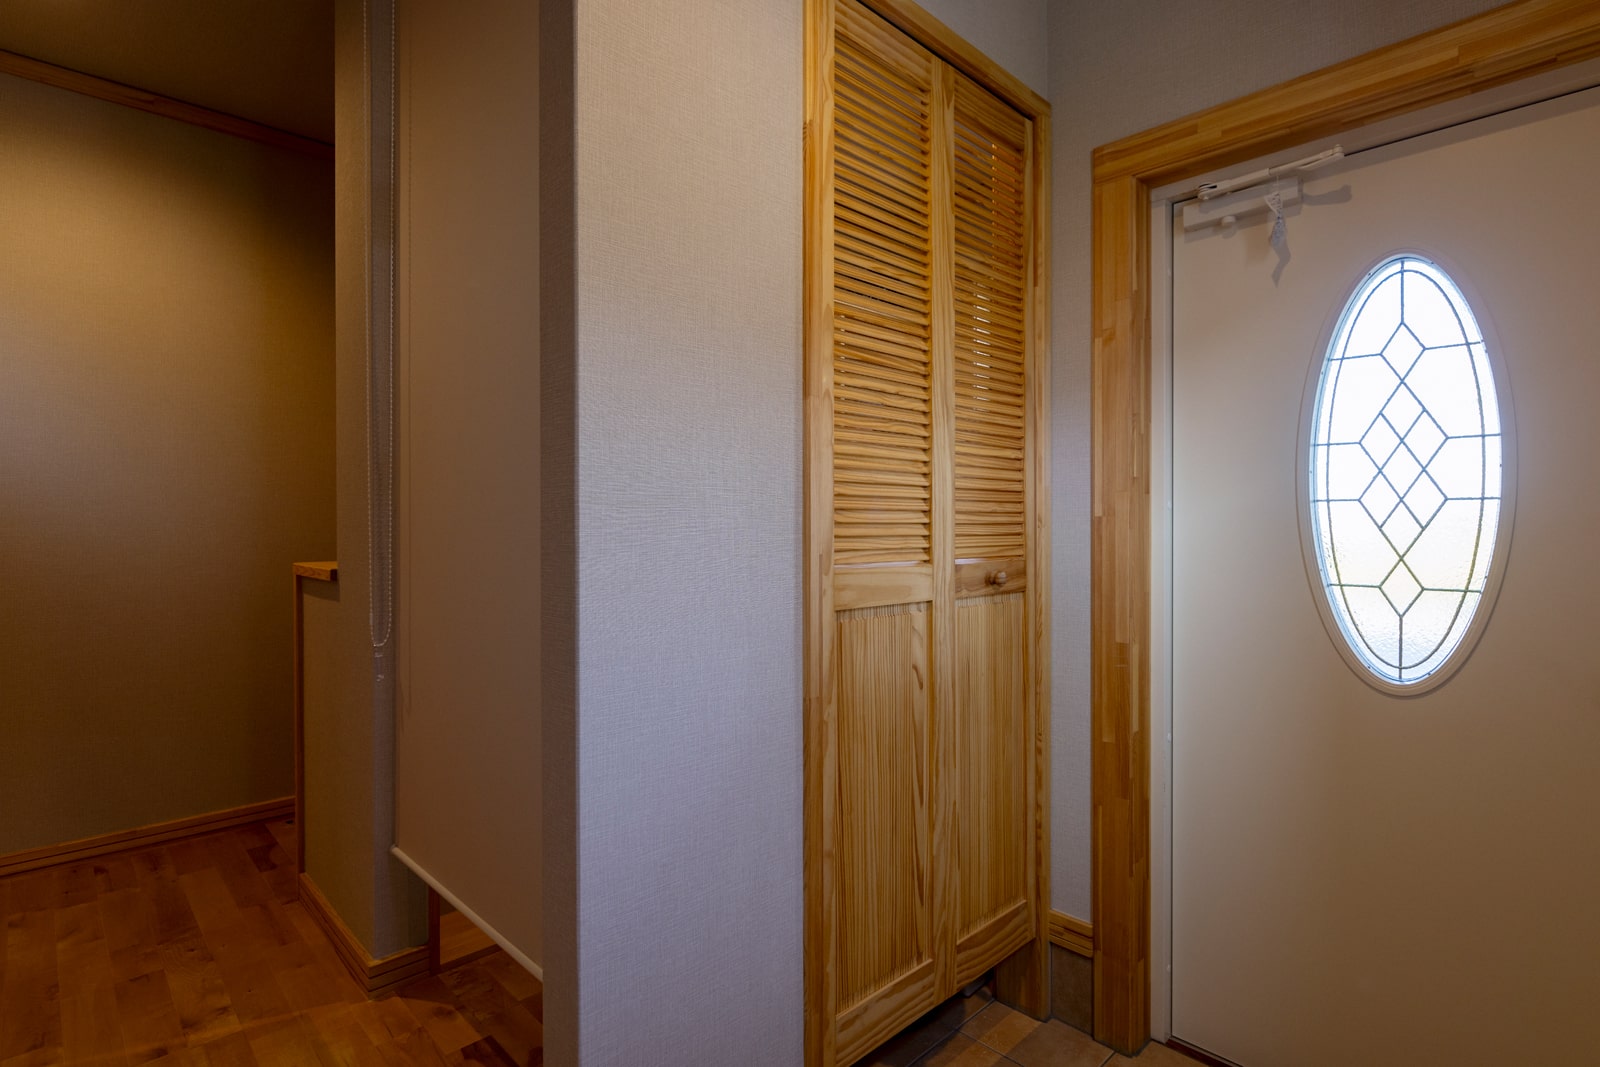 スウェーデン製の断熱ドアを採用した玄関。左のルーバー扉の奥は、玄関ホールにも出入り口を設けたシューズクローゼット